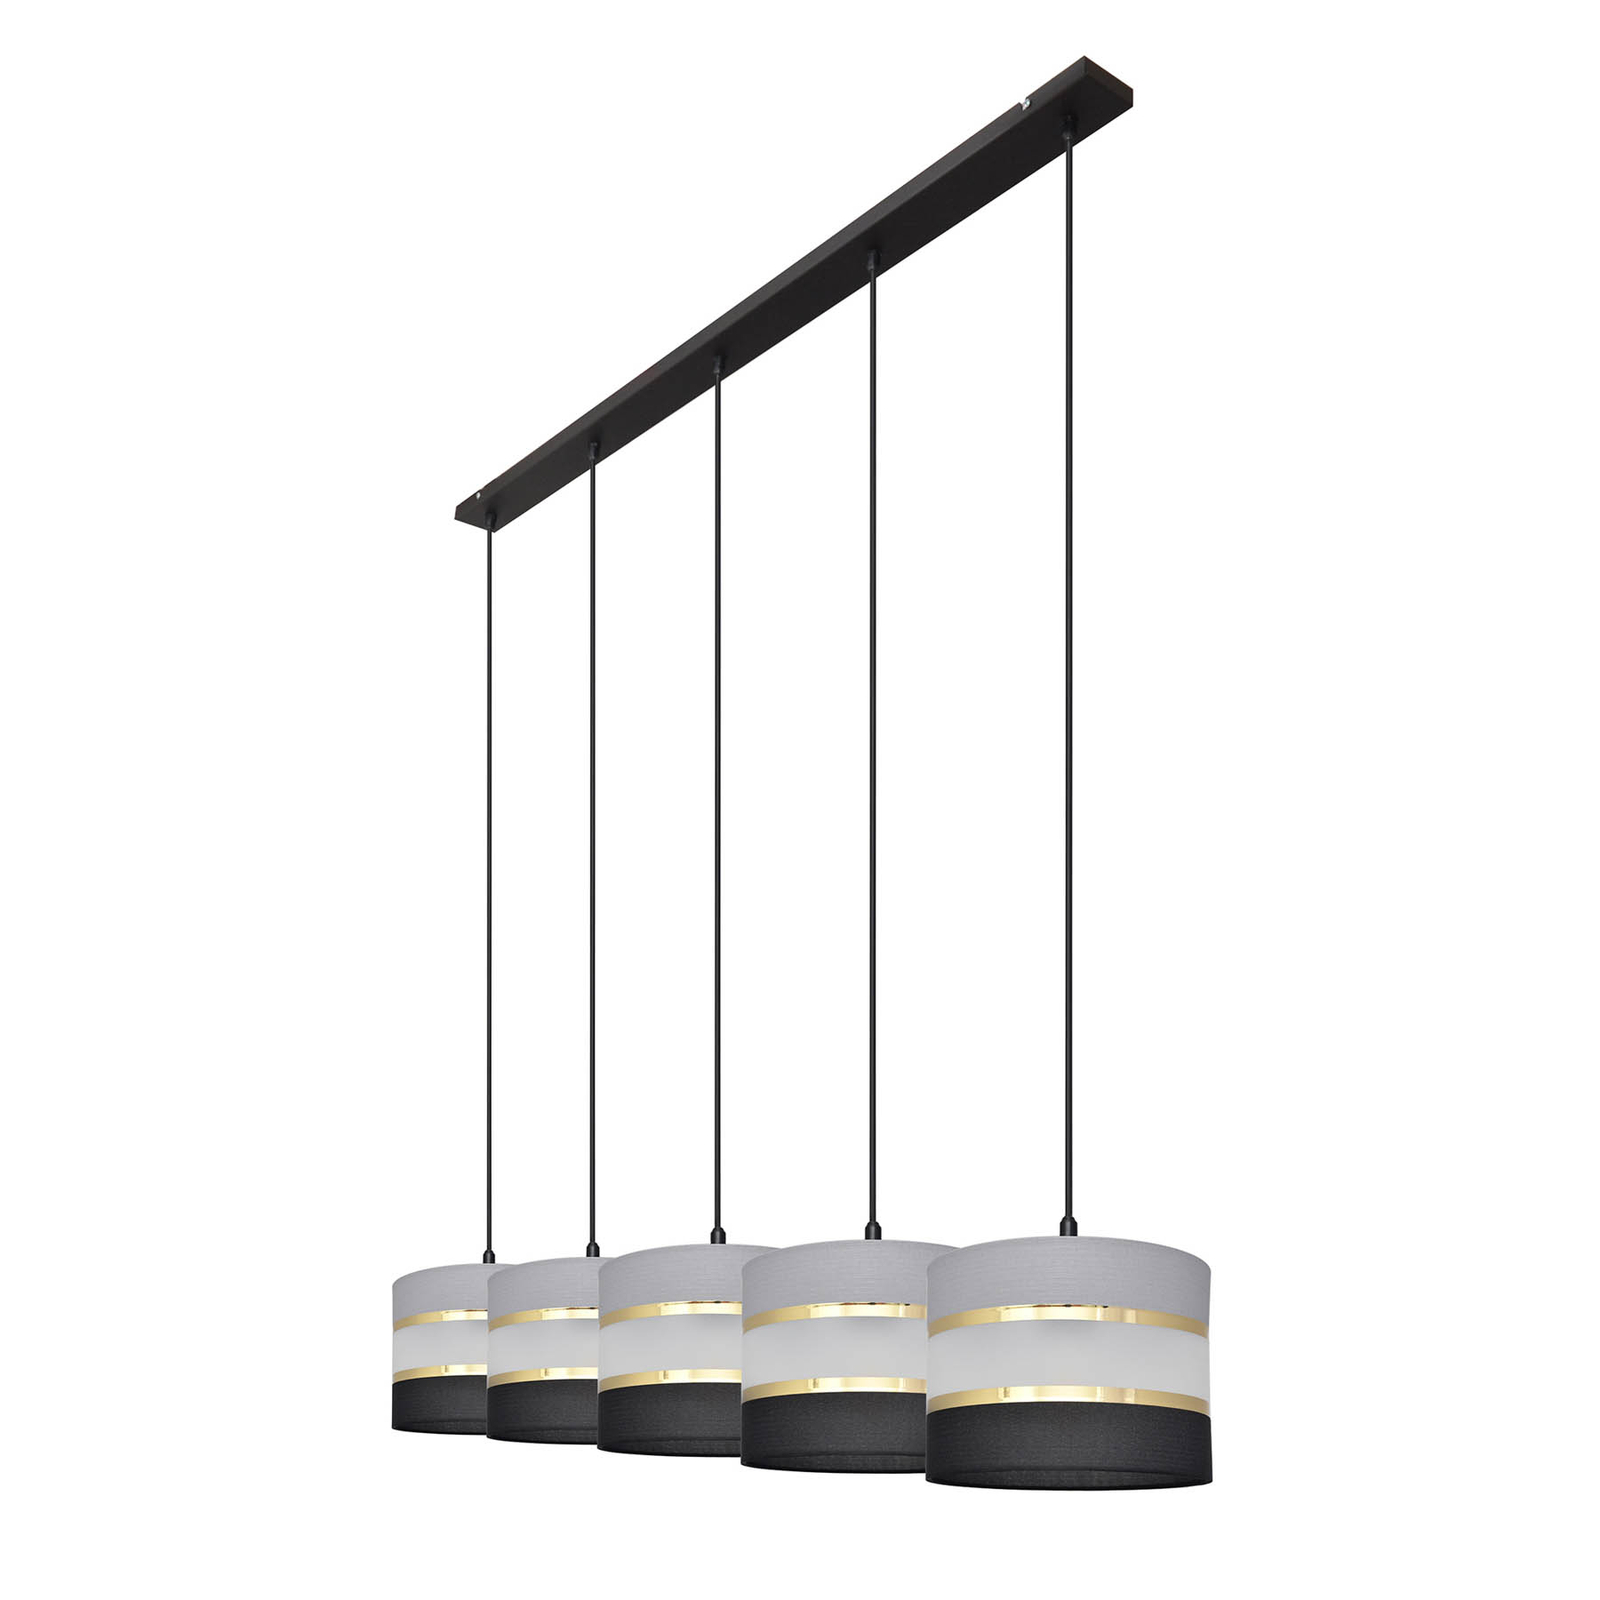 Hanglamp Helen grijs-zwart-goud balken 5-lamps